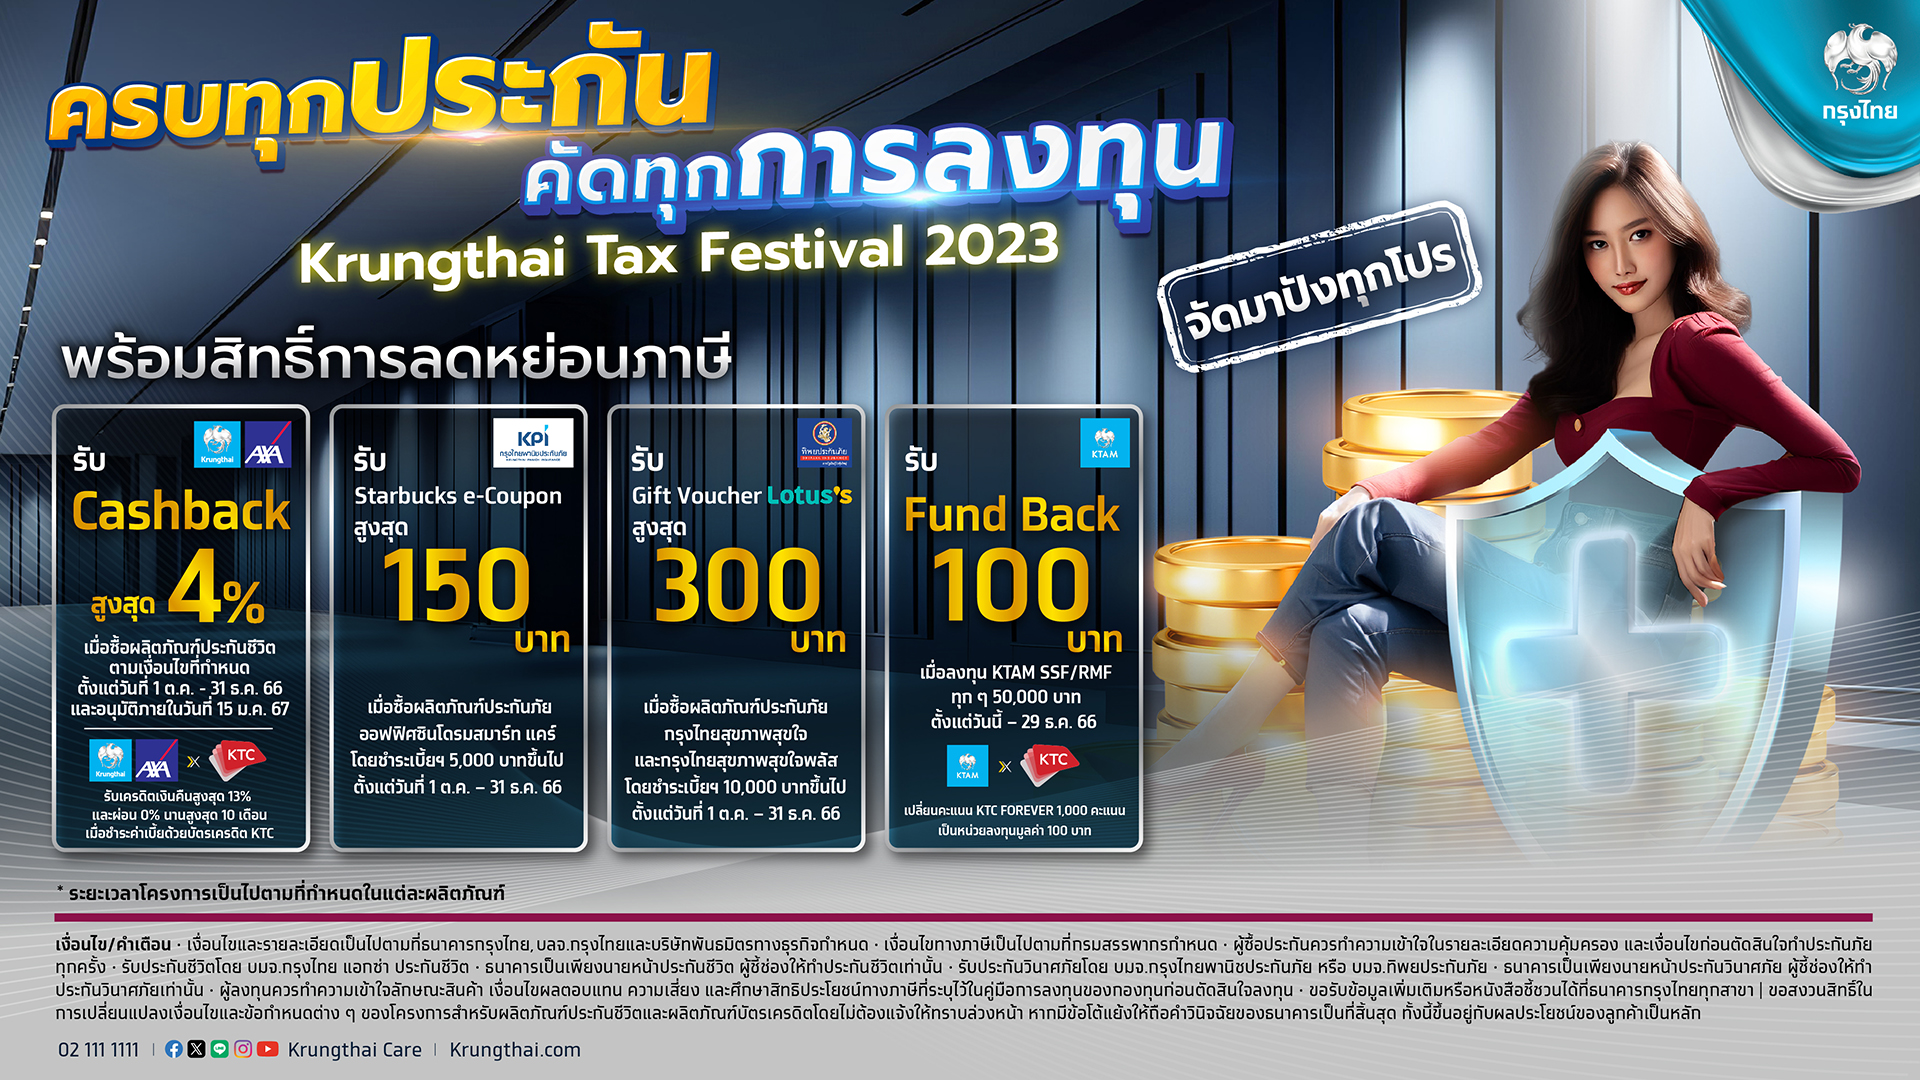 โค้งสุดท้าย! ลดหย่อนภาษีสุดคุ้ม กับ “Krungthai Tax Festival” คัดโปรเด็ด “ประกัน-กองทุน” วันนี้ถึงสิ้นปี 2566